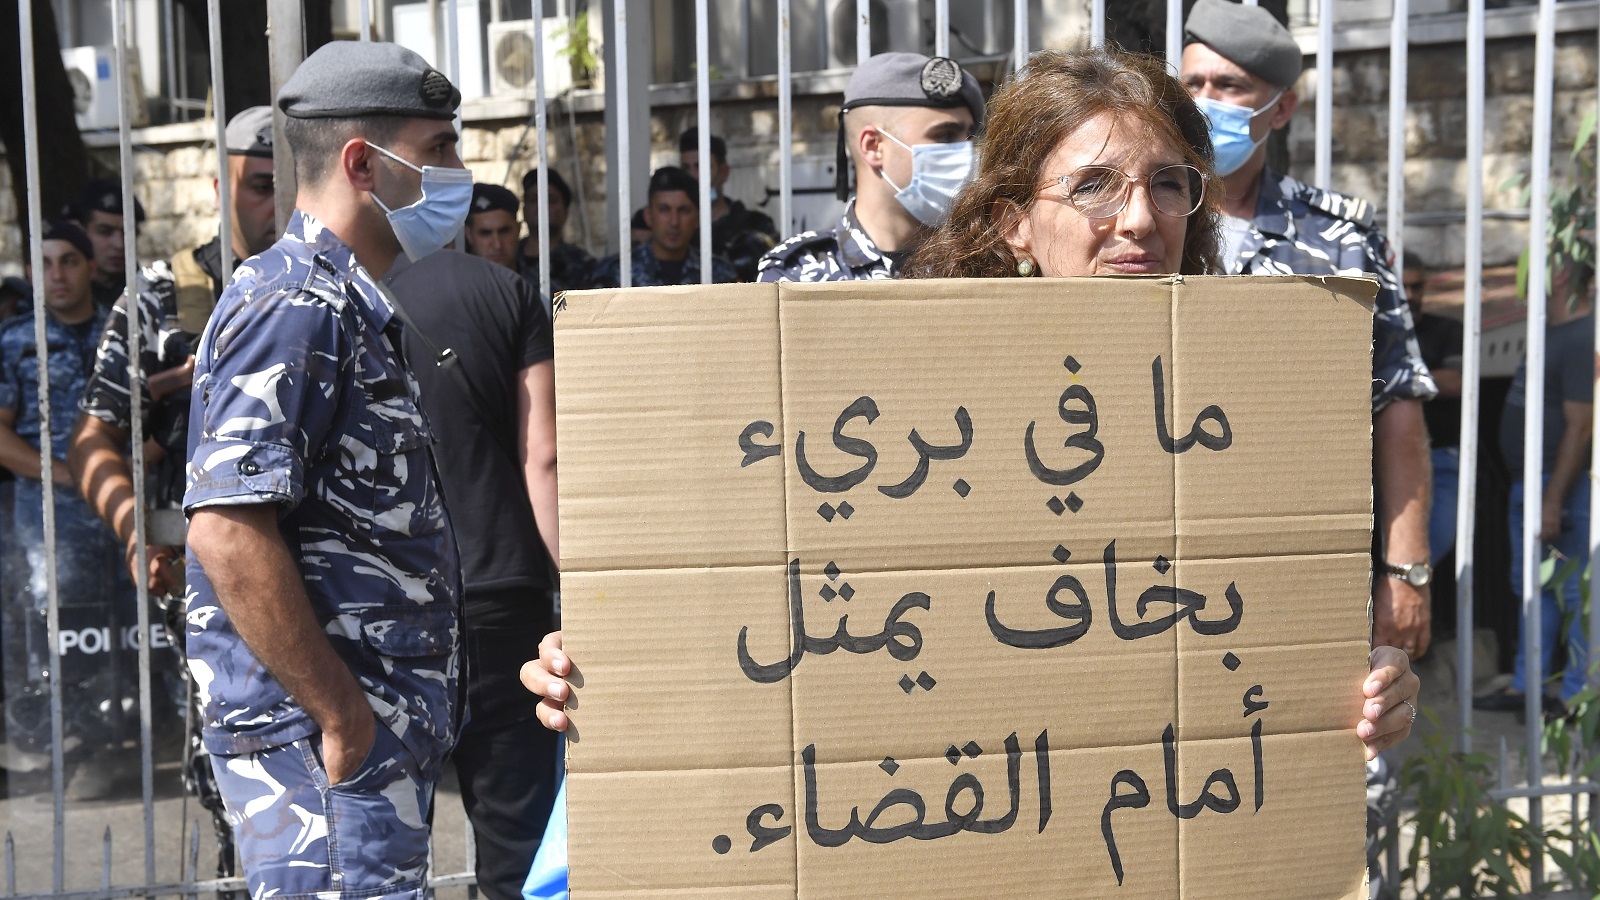 الكابيتال كونترول وسلامة والقضاء: تسويات مهانة اللبنانيين وتفجير غضبهم؟